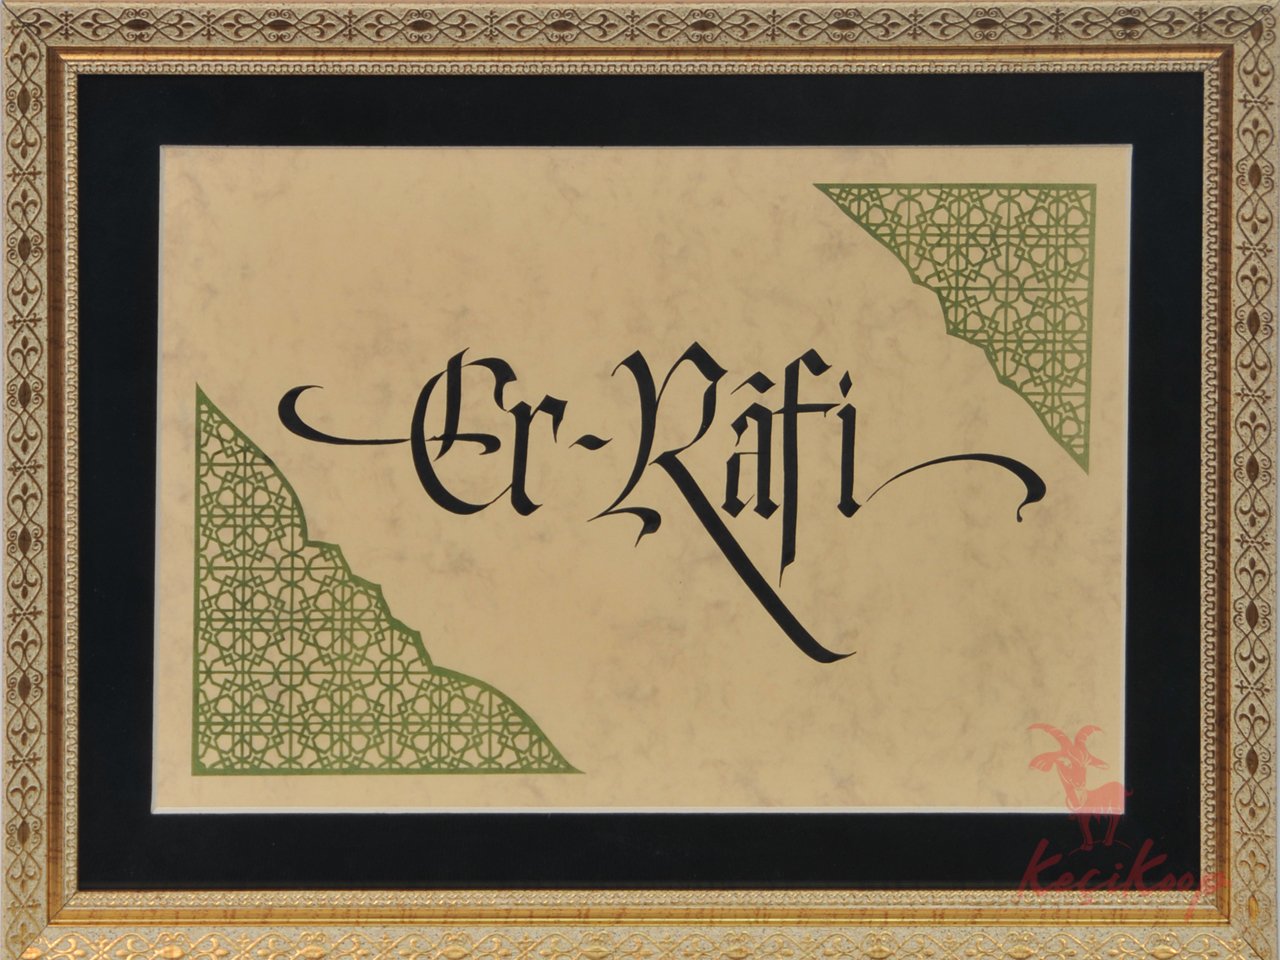 Er-Rafi Esma-i Hüsna’sı (Kaligrafi- Kaat’ı)